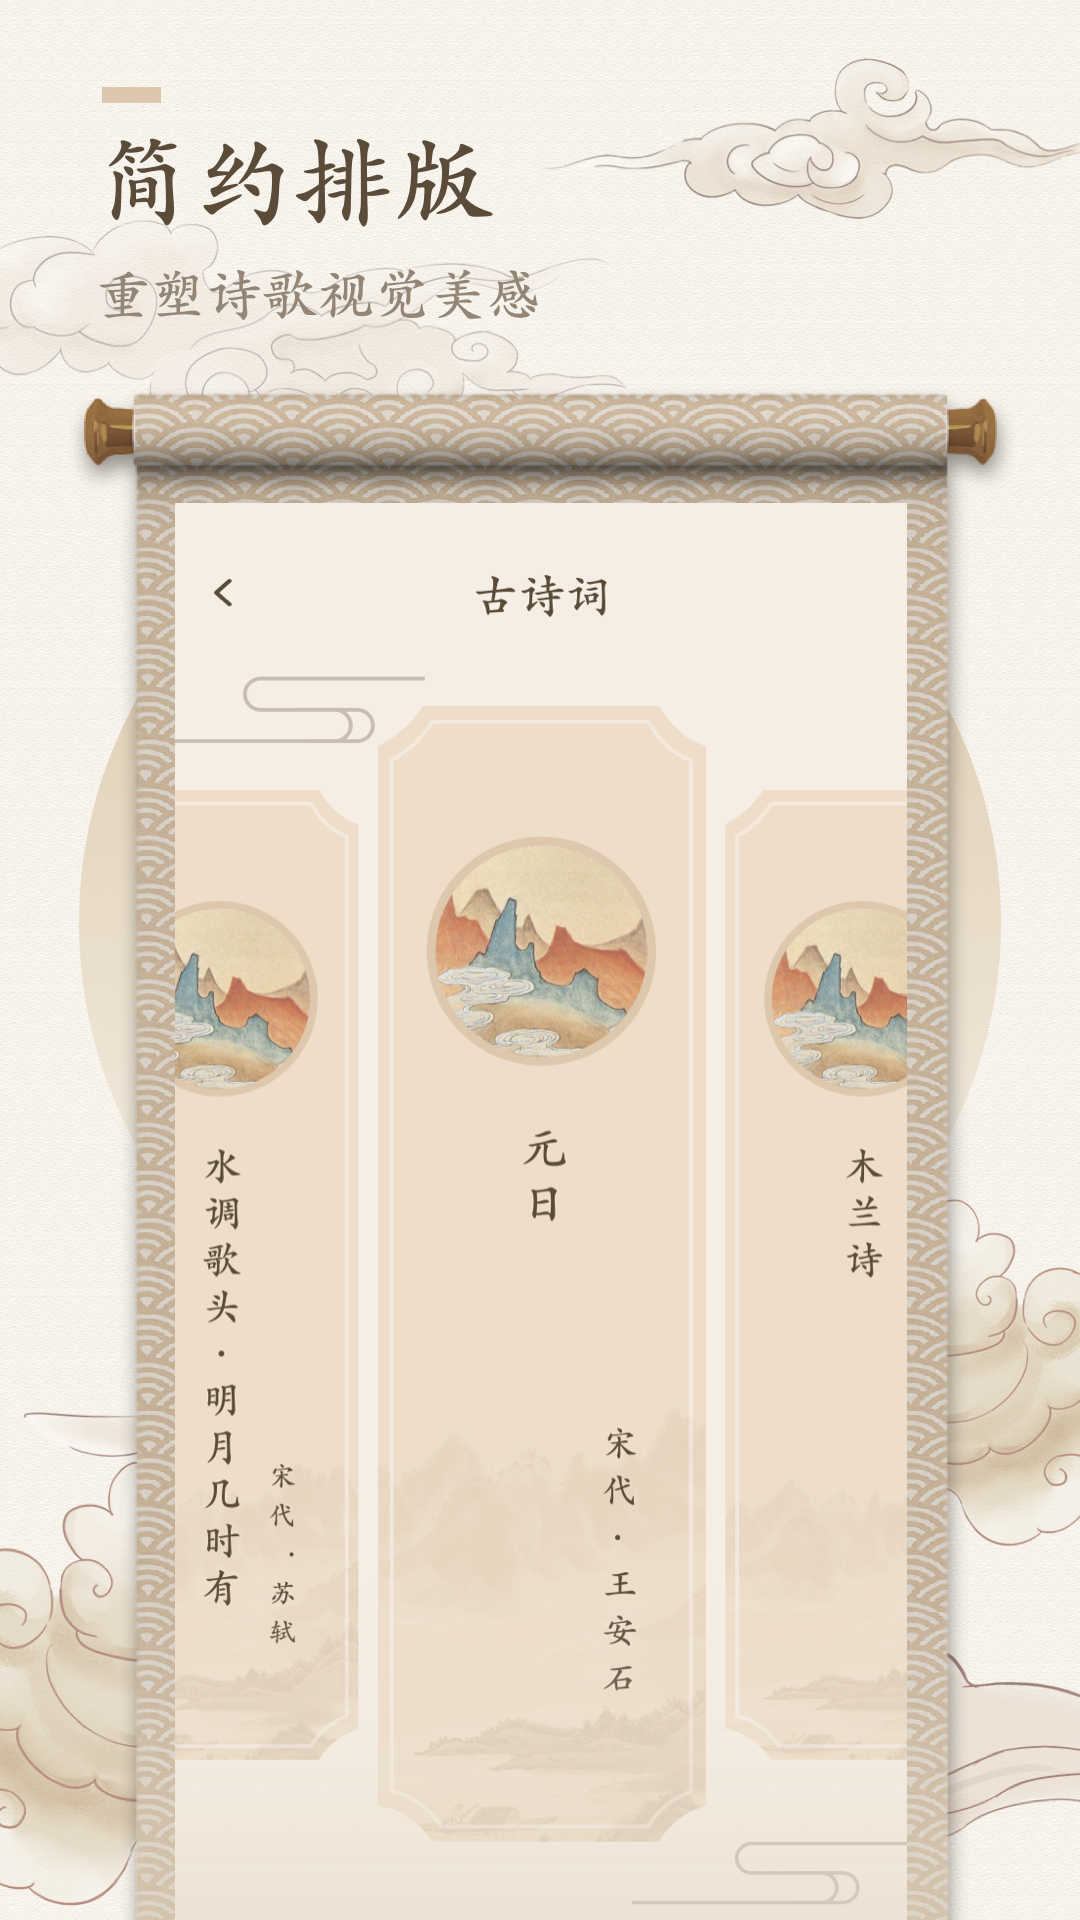 海棠书屋app